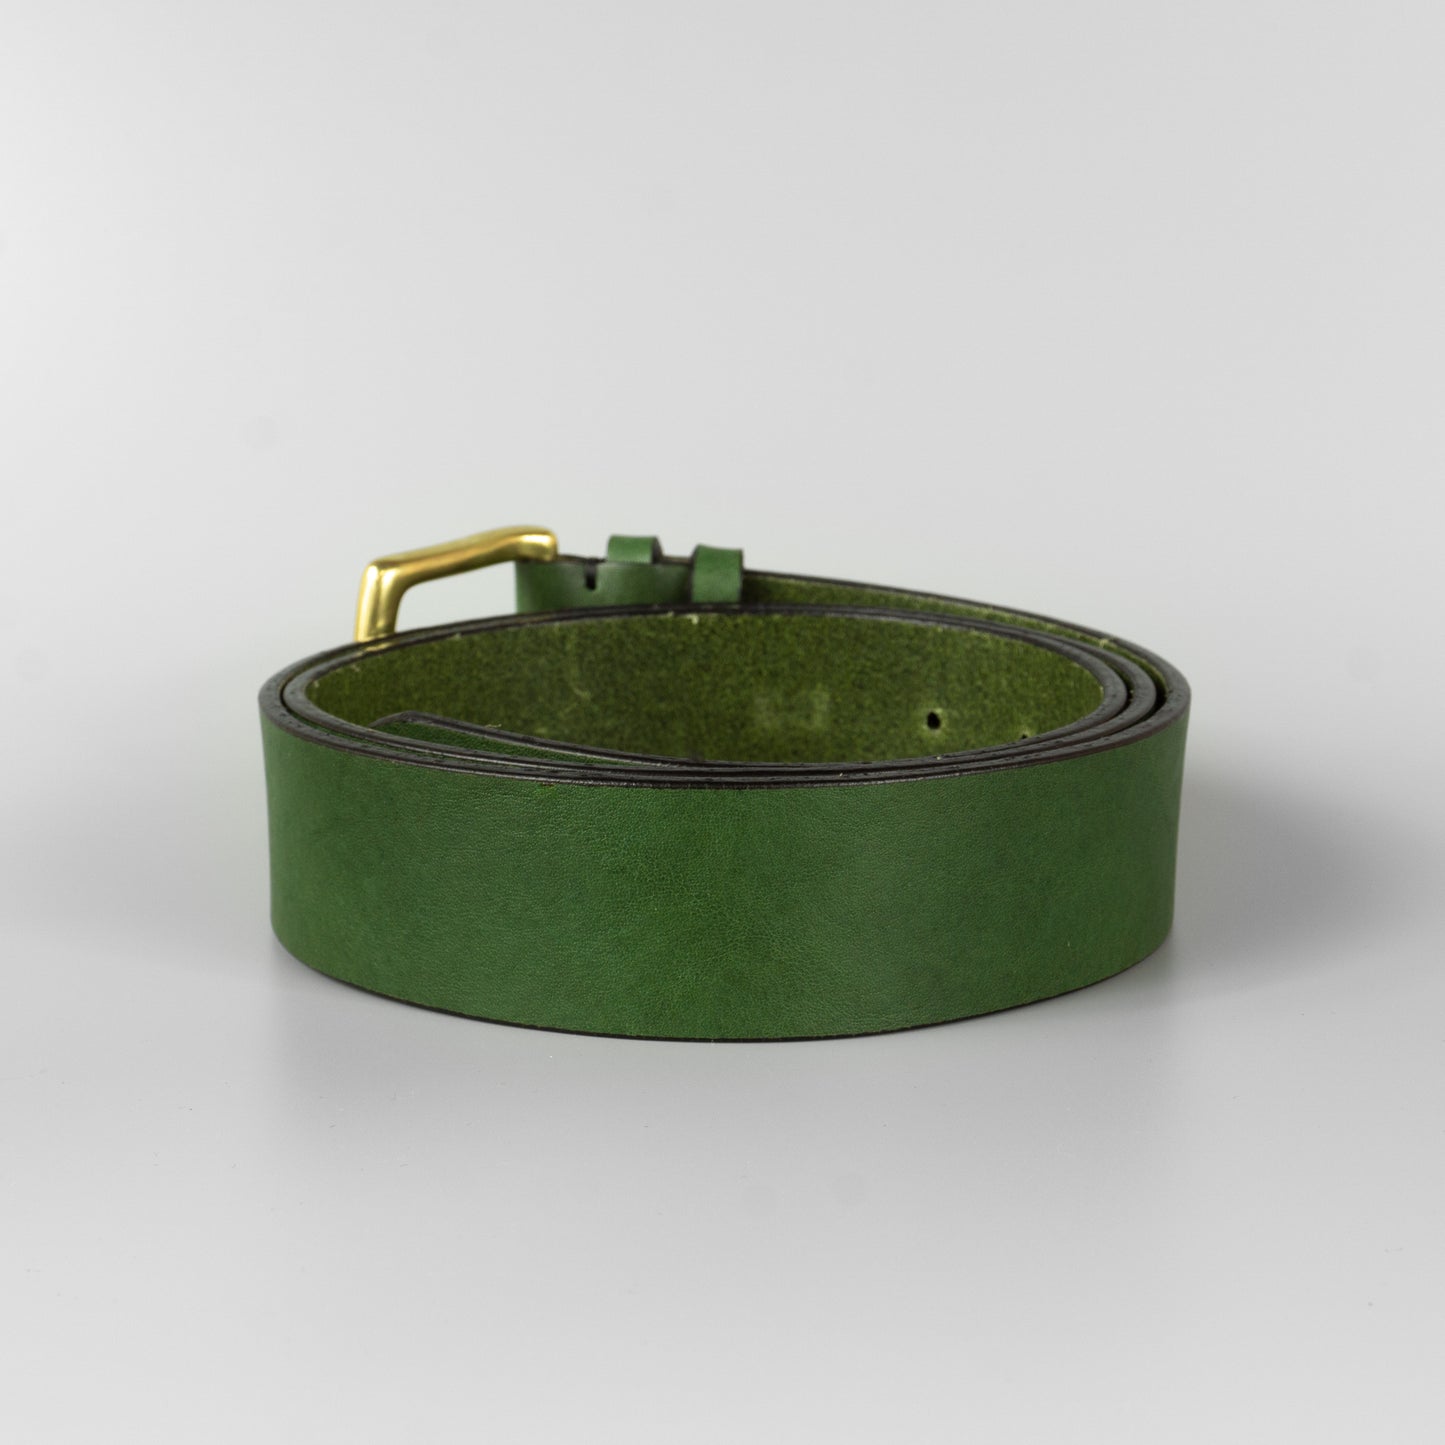 Zelený pánsky kožený opasok do riflí "Hunter" široký 4 cm